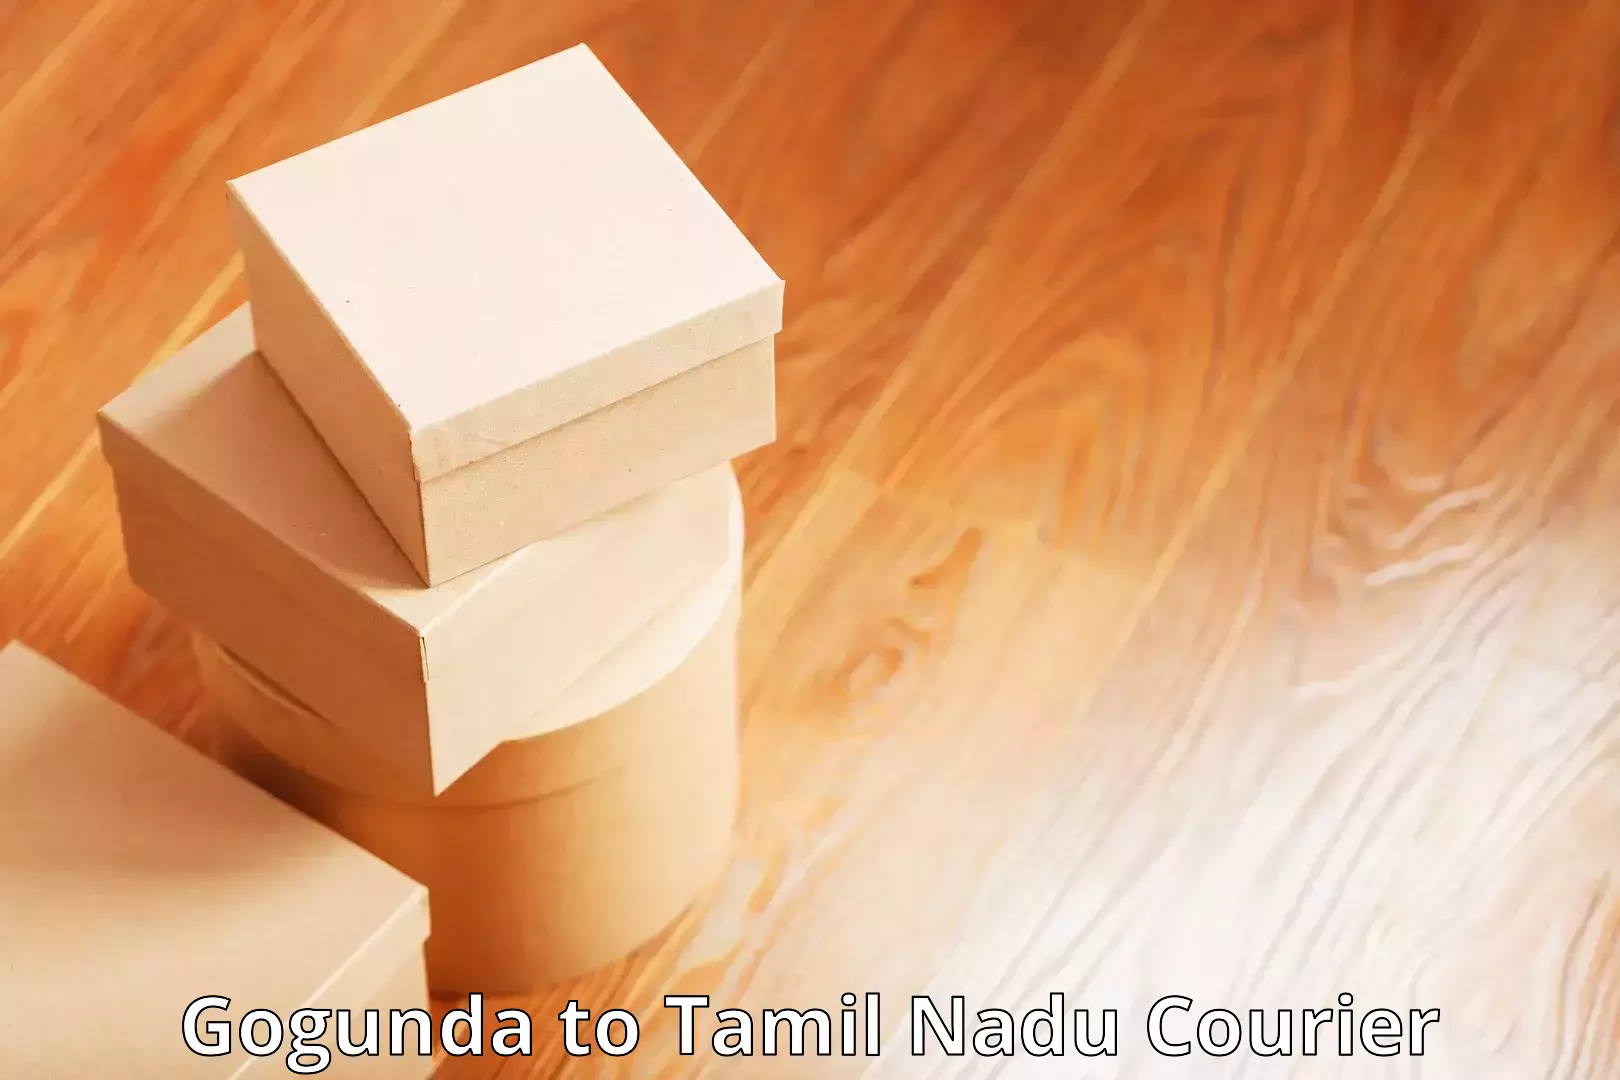 Premium courier services in Gogunda to Tamil Nadu